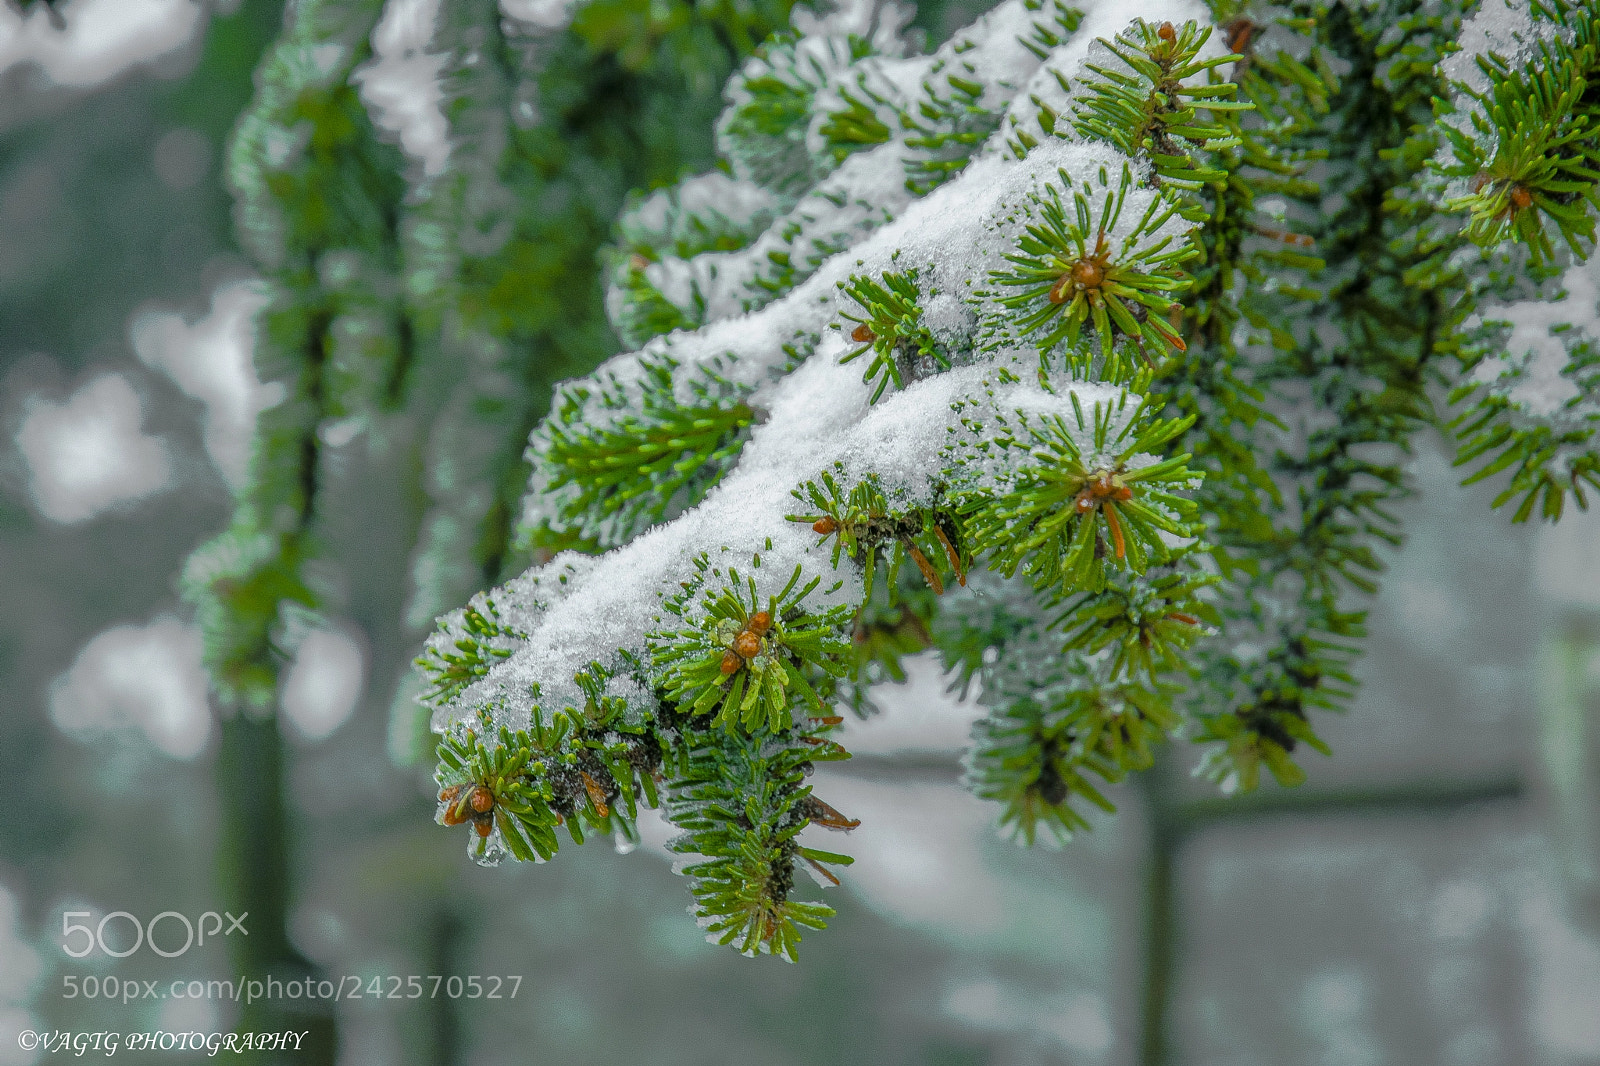 Nikon D3400 sample photo. A fir with snow photography